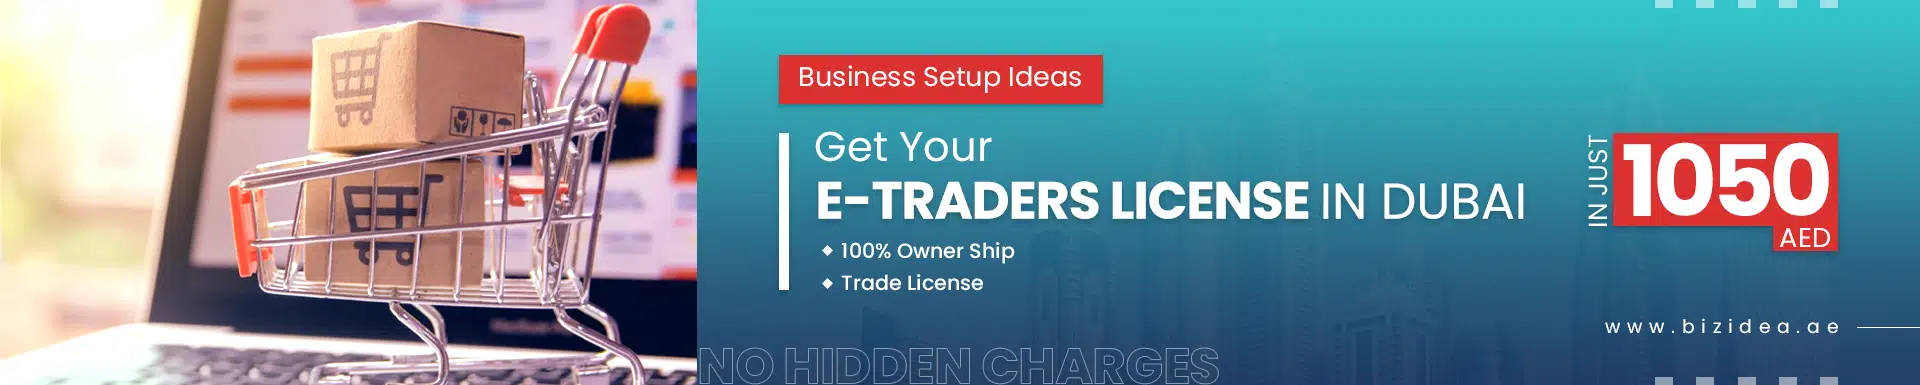 bizidea-e-traders-license-cost-in-dubai